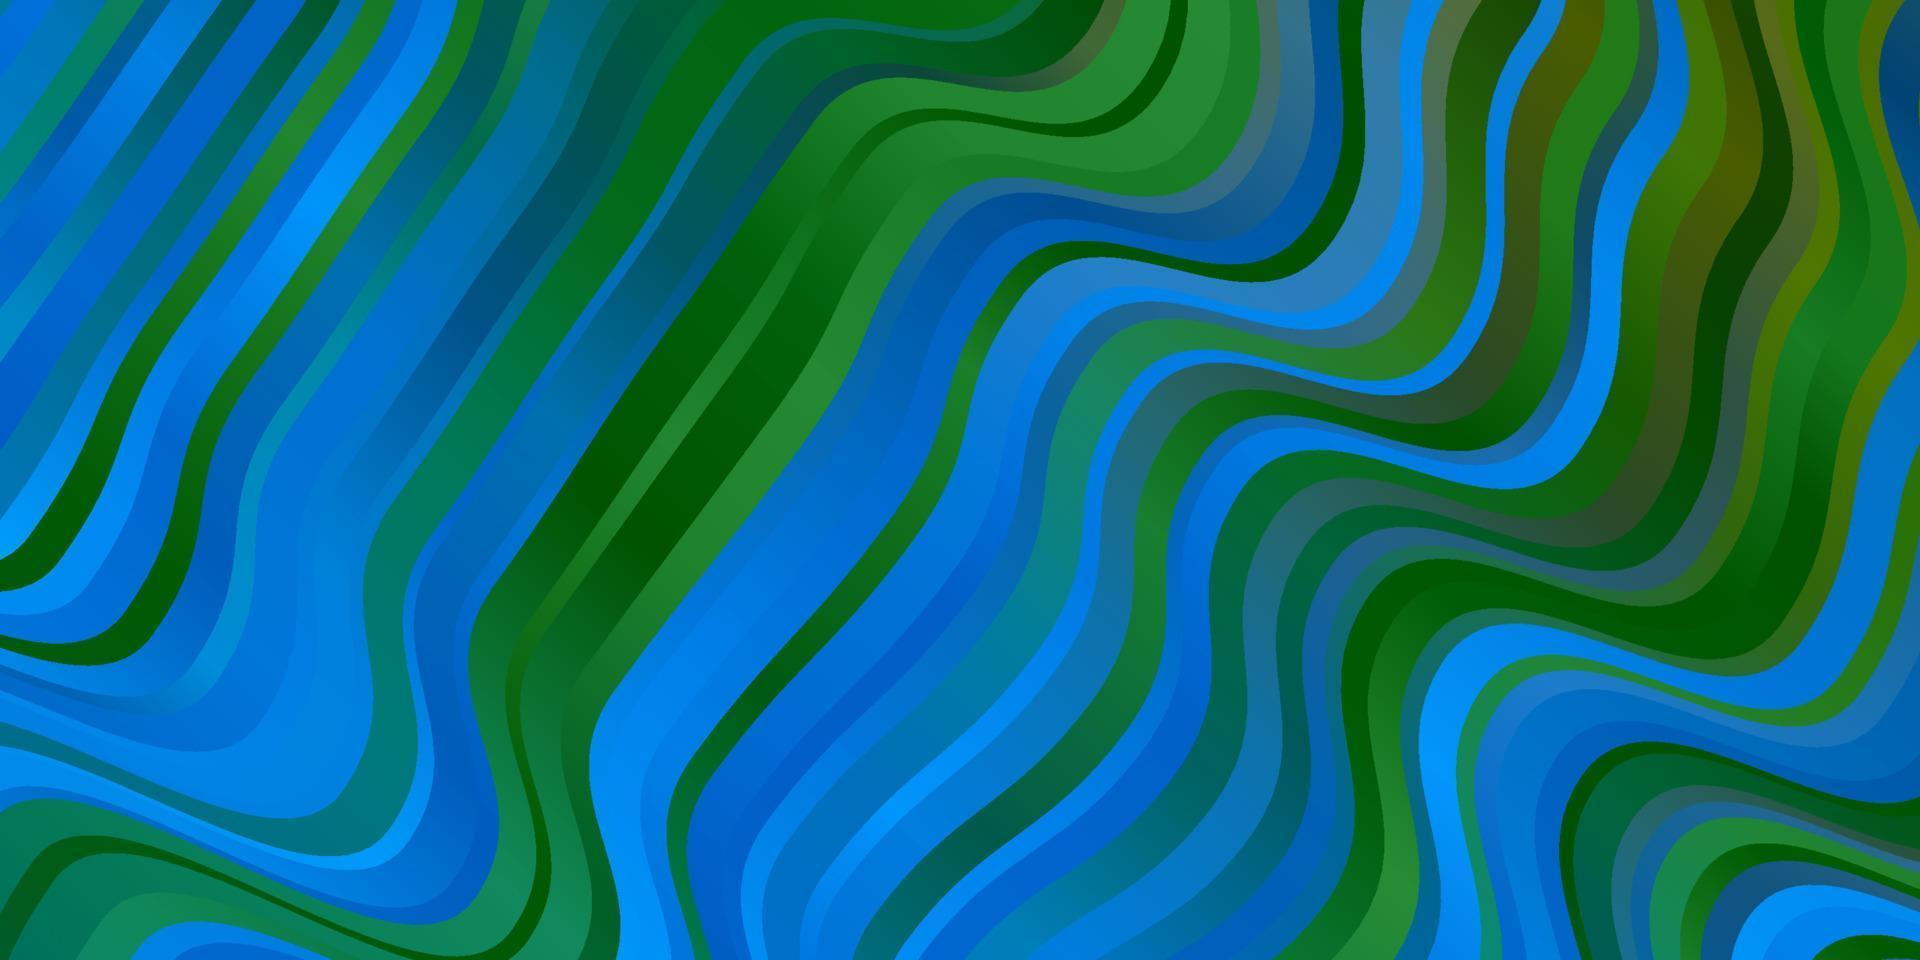 sfondo vettoriale azzurro, verde con linee.